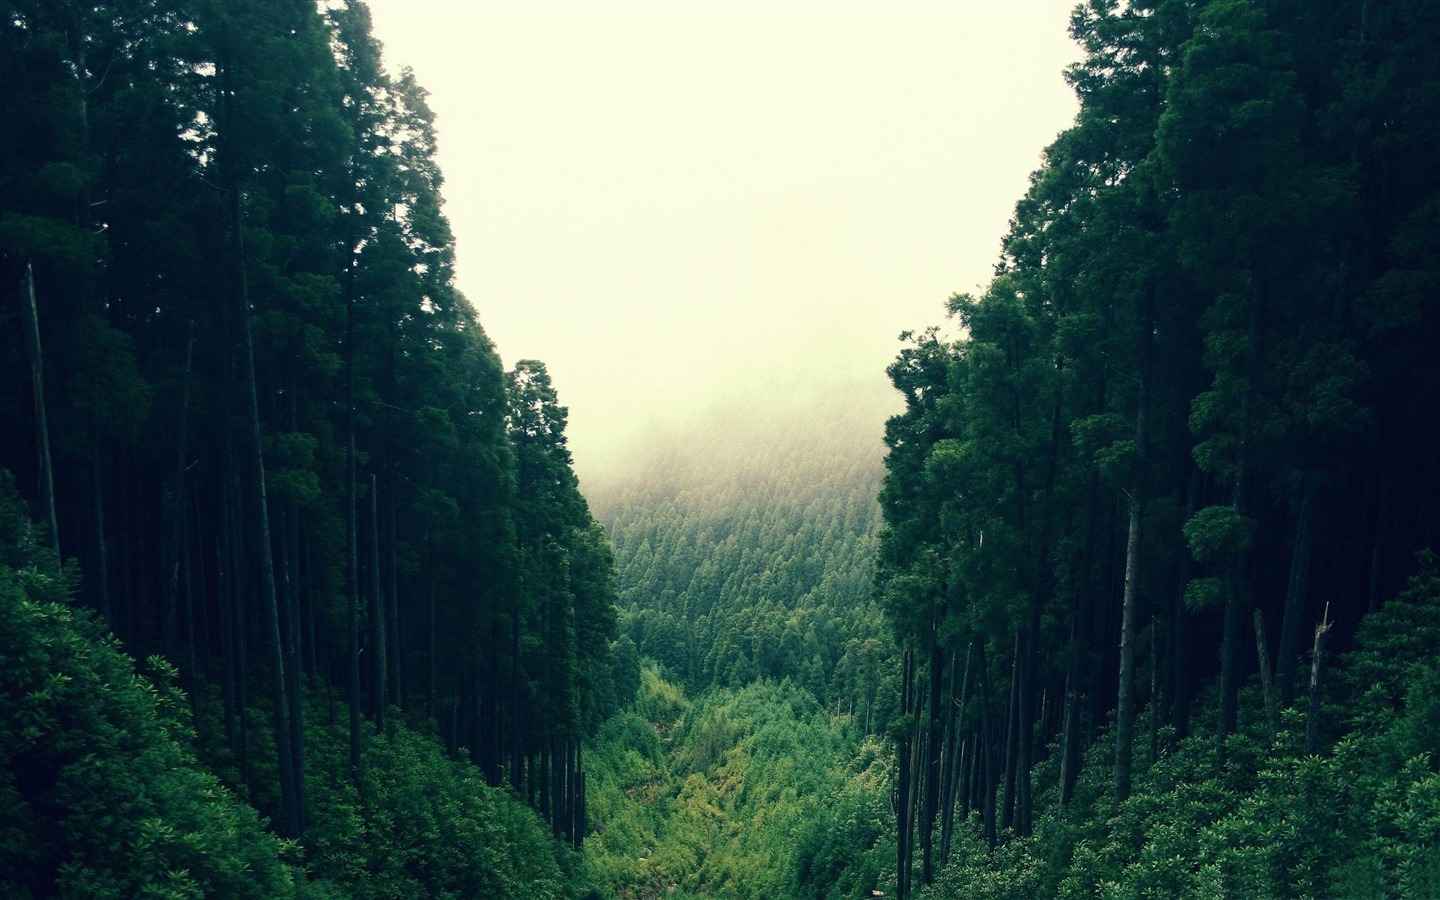 fondos de pantalla de bosque tumblr,verde,naturaleza,paisaje natural,bosque,árbol